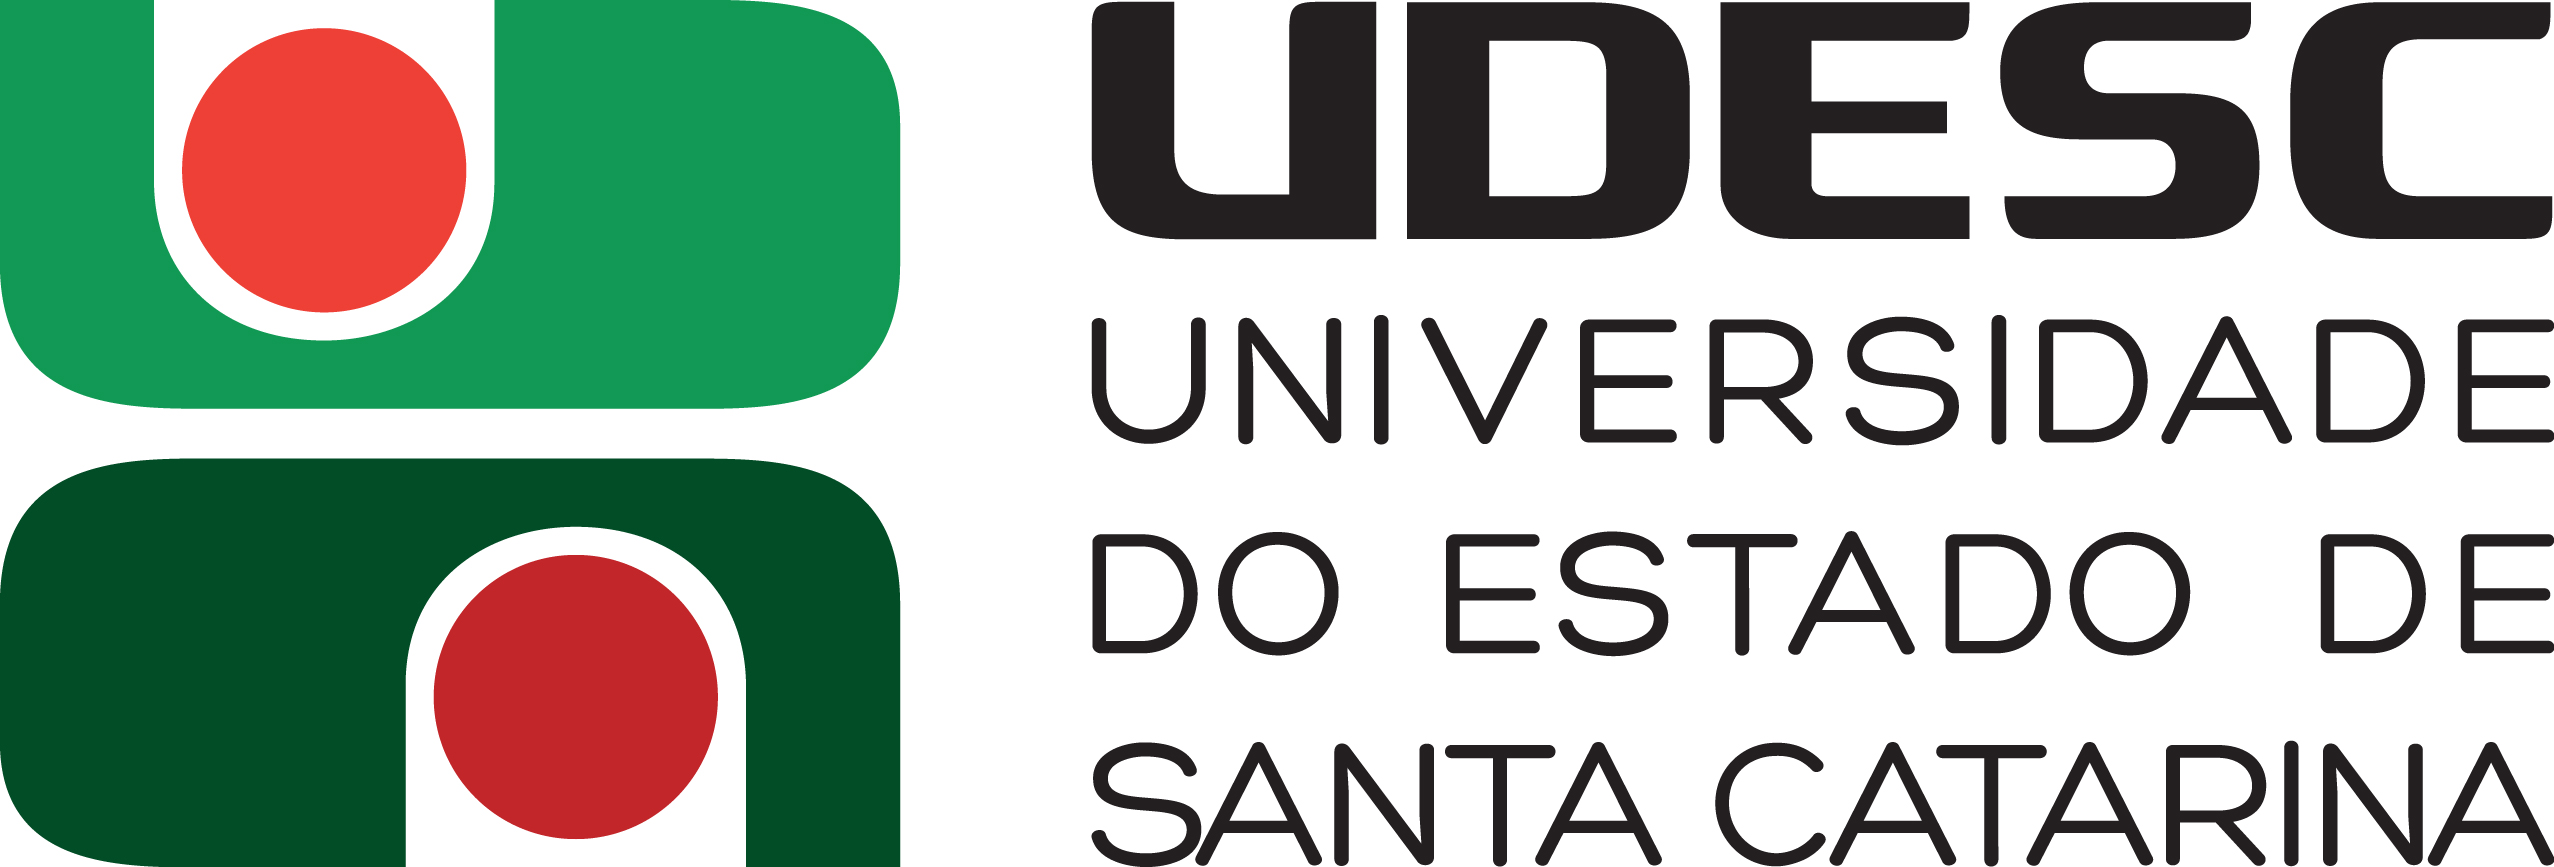 Udesc Joinville abre inscrições para mestrado e doutorado em engenharia elétrica